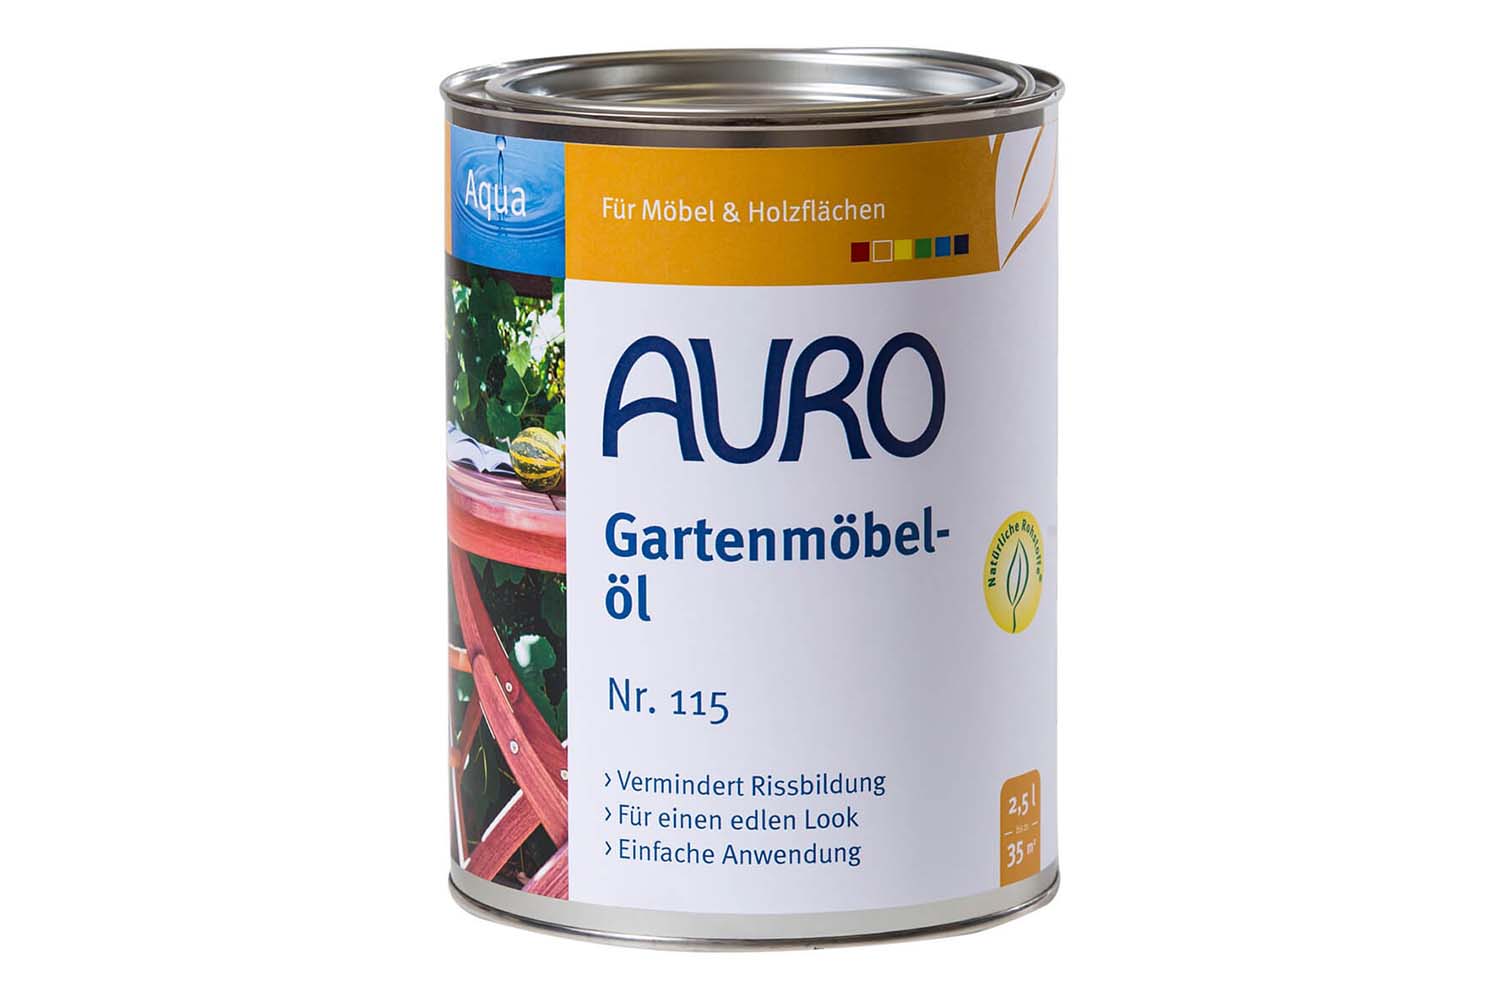 Auro Gartenmöbelöl Aqua Nr. 115